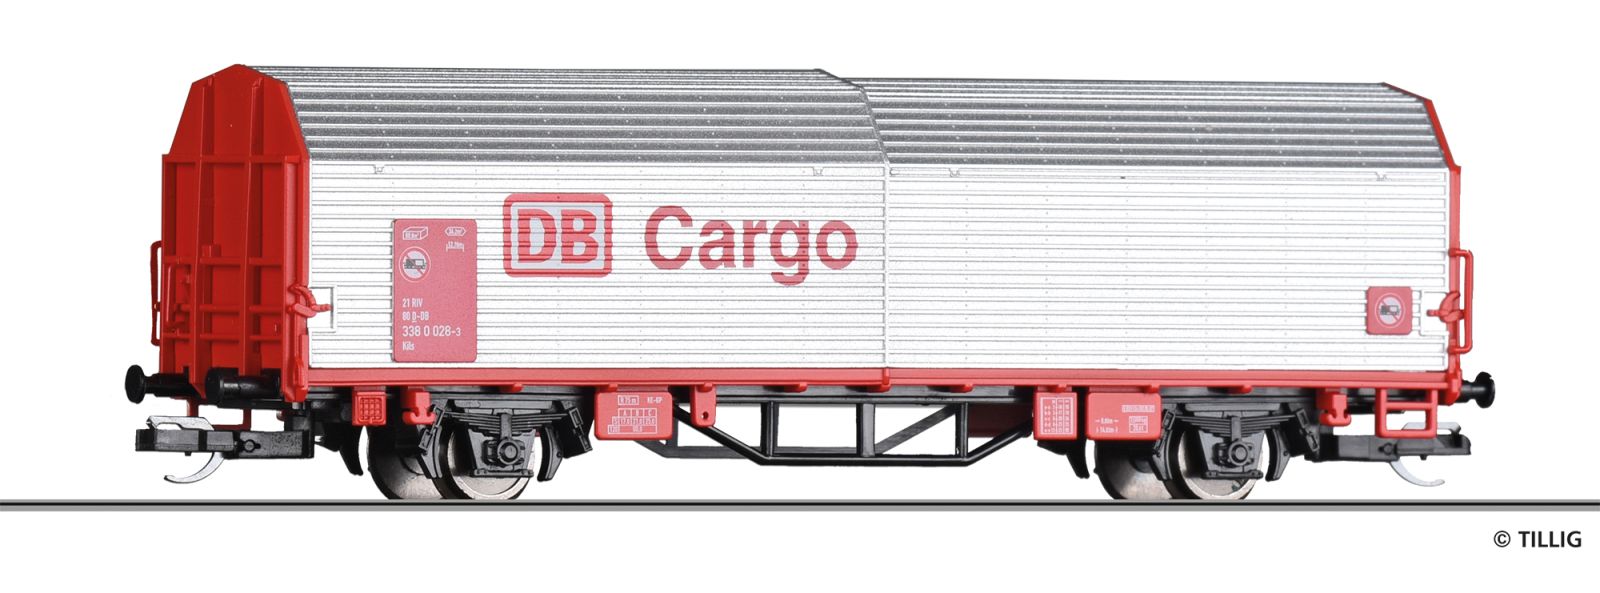 Hood car DB Cargo